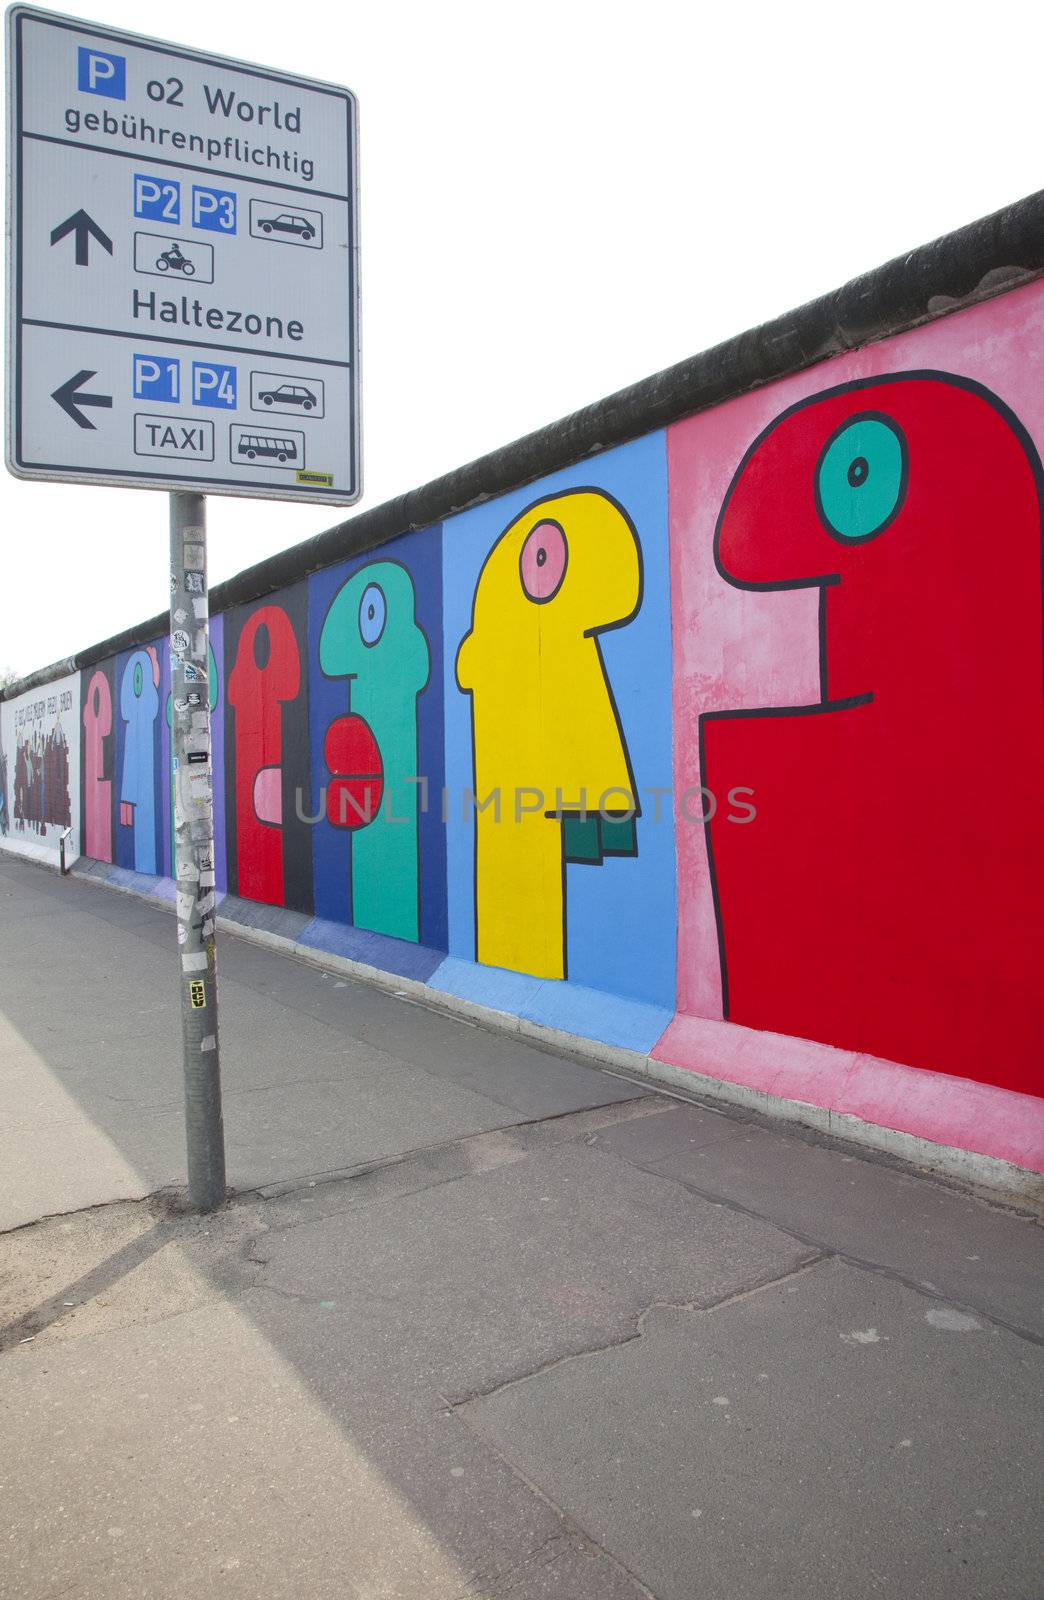 Berlin Wall (East Side Gallery) by chrisdorney